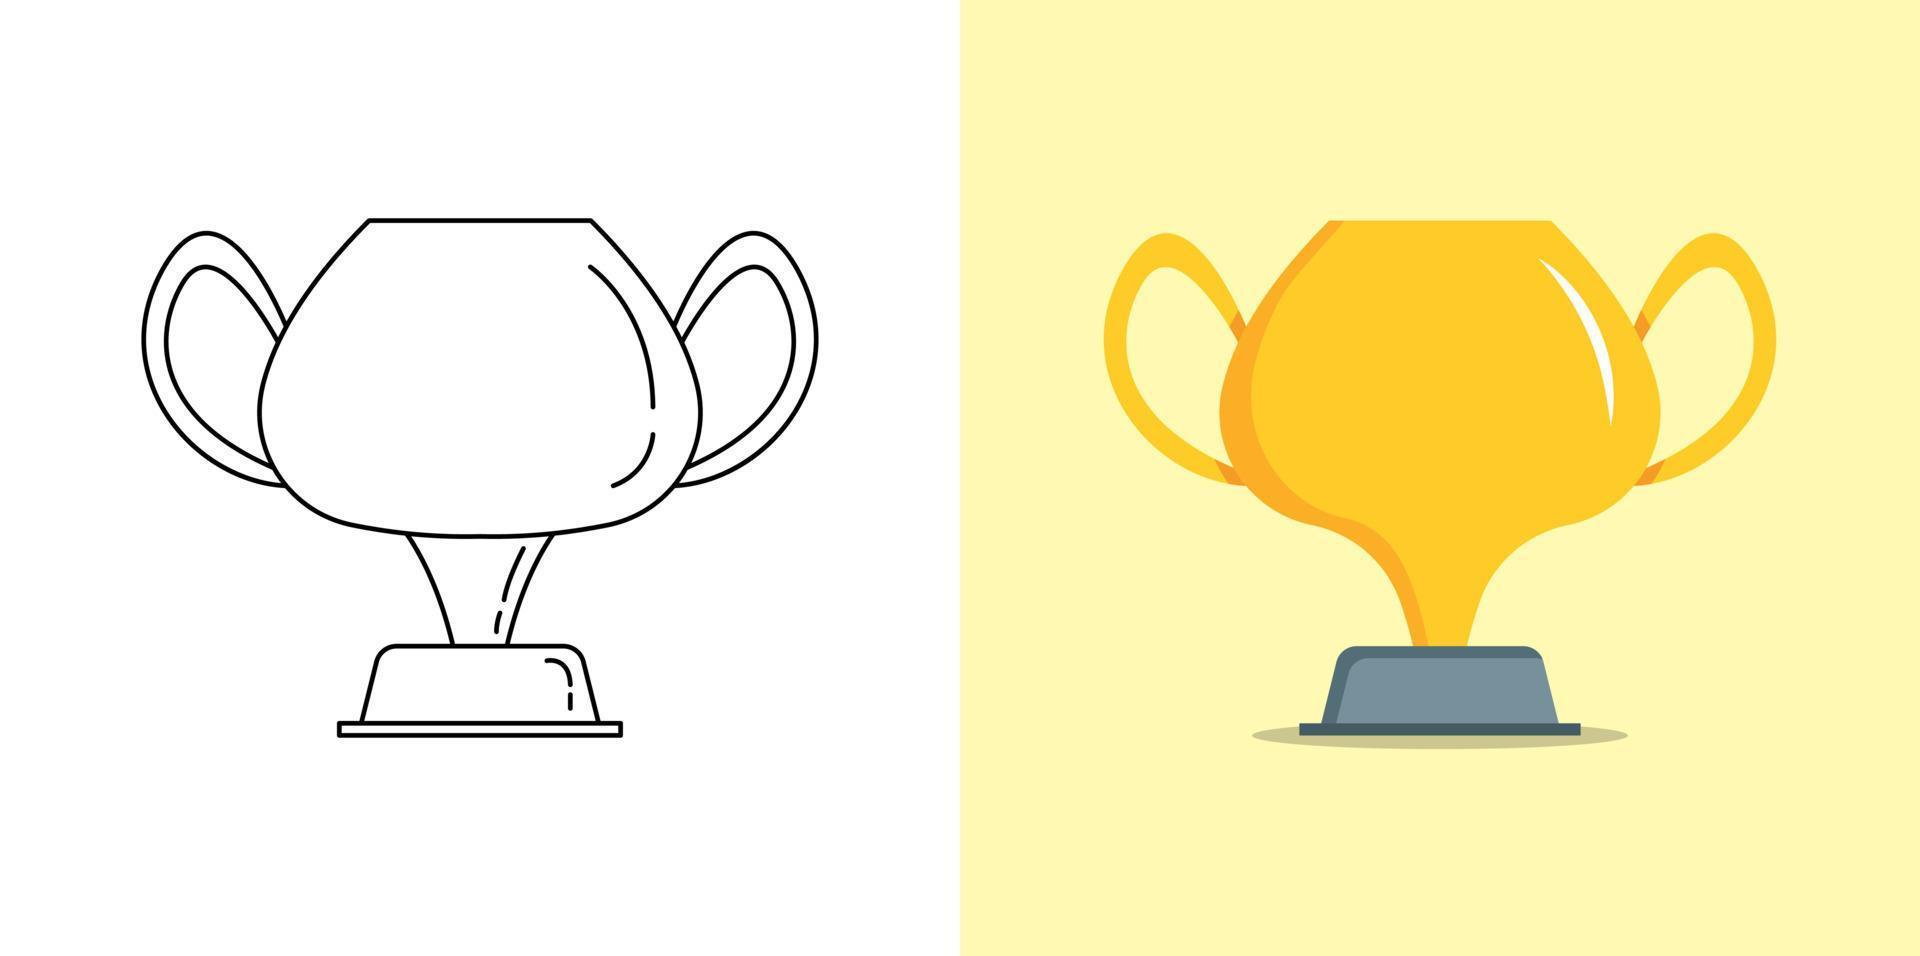 gyllene trofén kopp, sport trofén konkurrens tilldela i platt och översikt illustration vektor